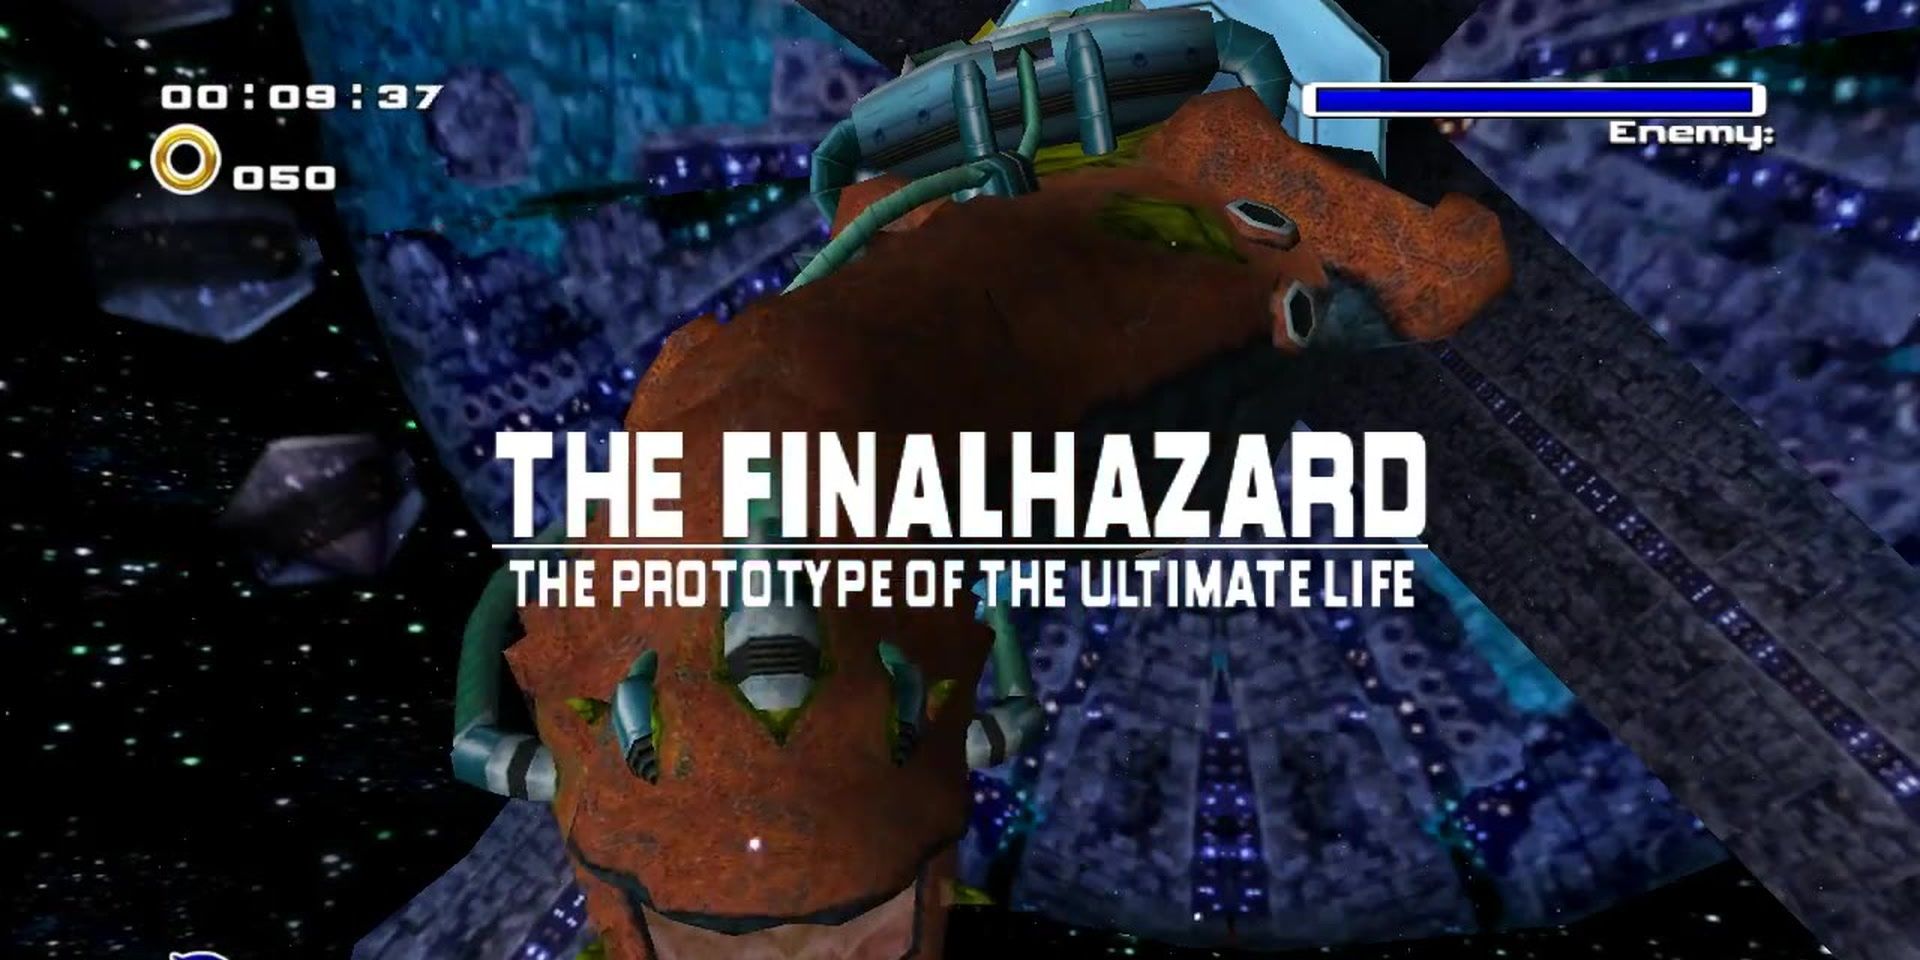 The final boss of Adventure 2 - the Finalhazard